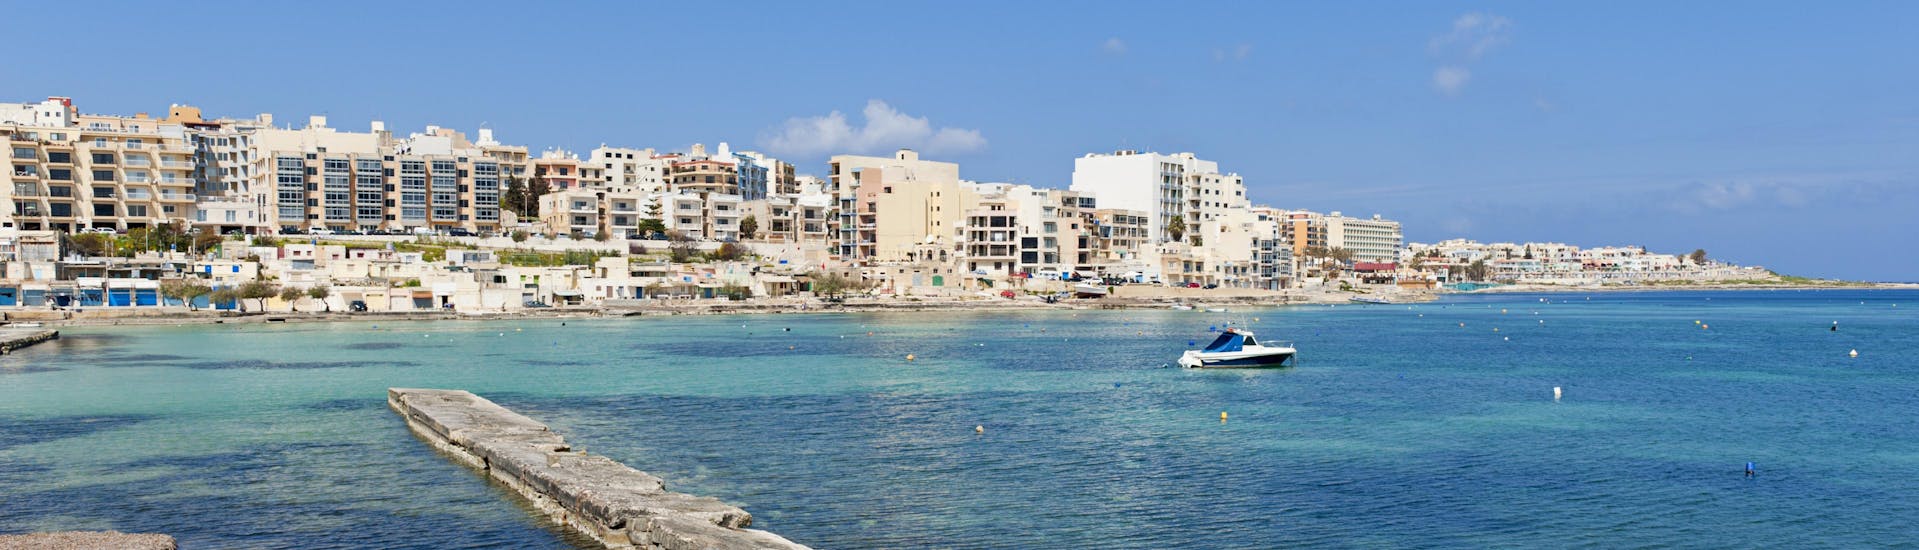 Una barca vicino alla costa di Malta a Qawra.